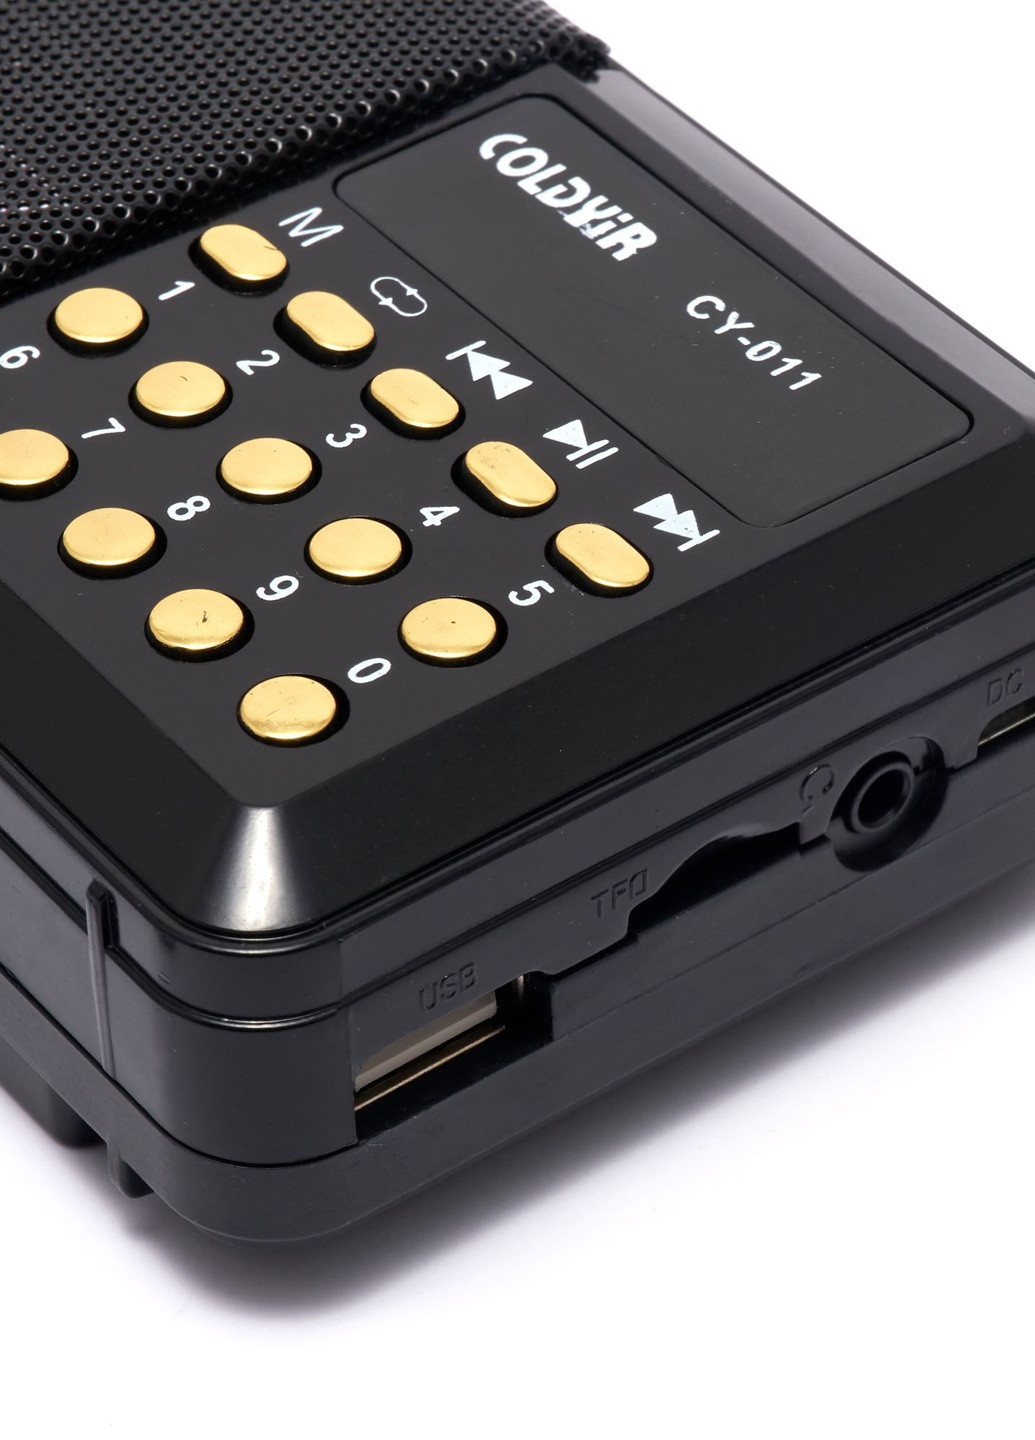 Портативное аккумкляторное FM- радио coldyir cy-011 С разъемом для USB и карты памяти черное Led (257623827)